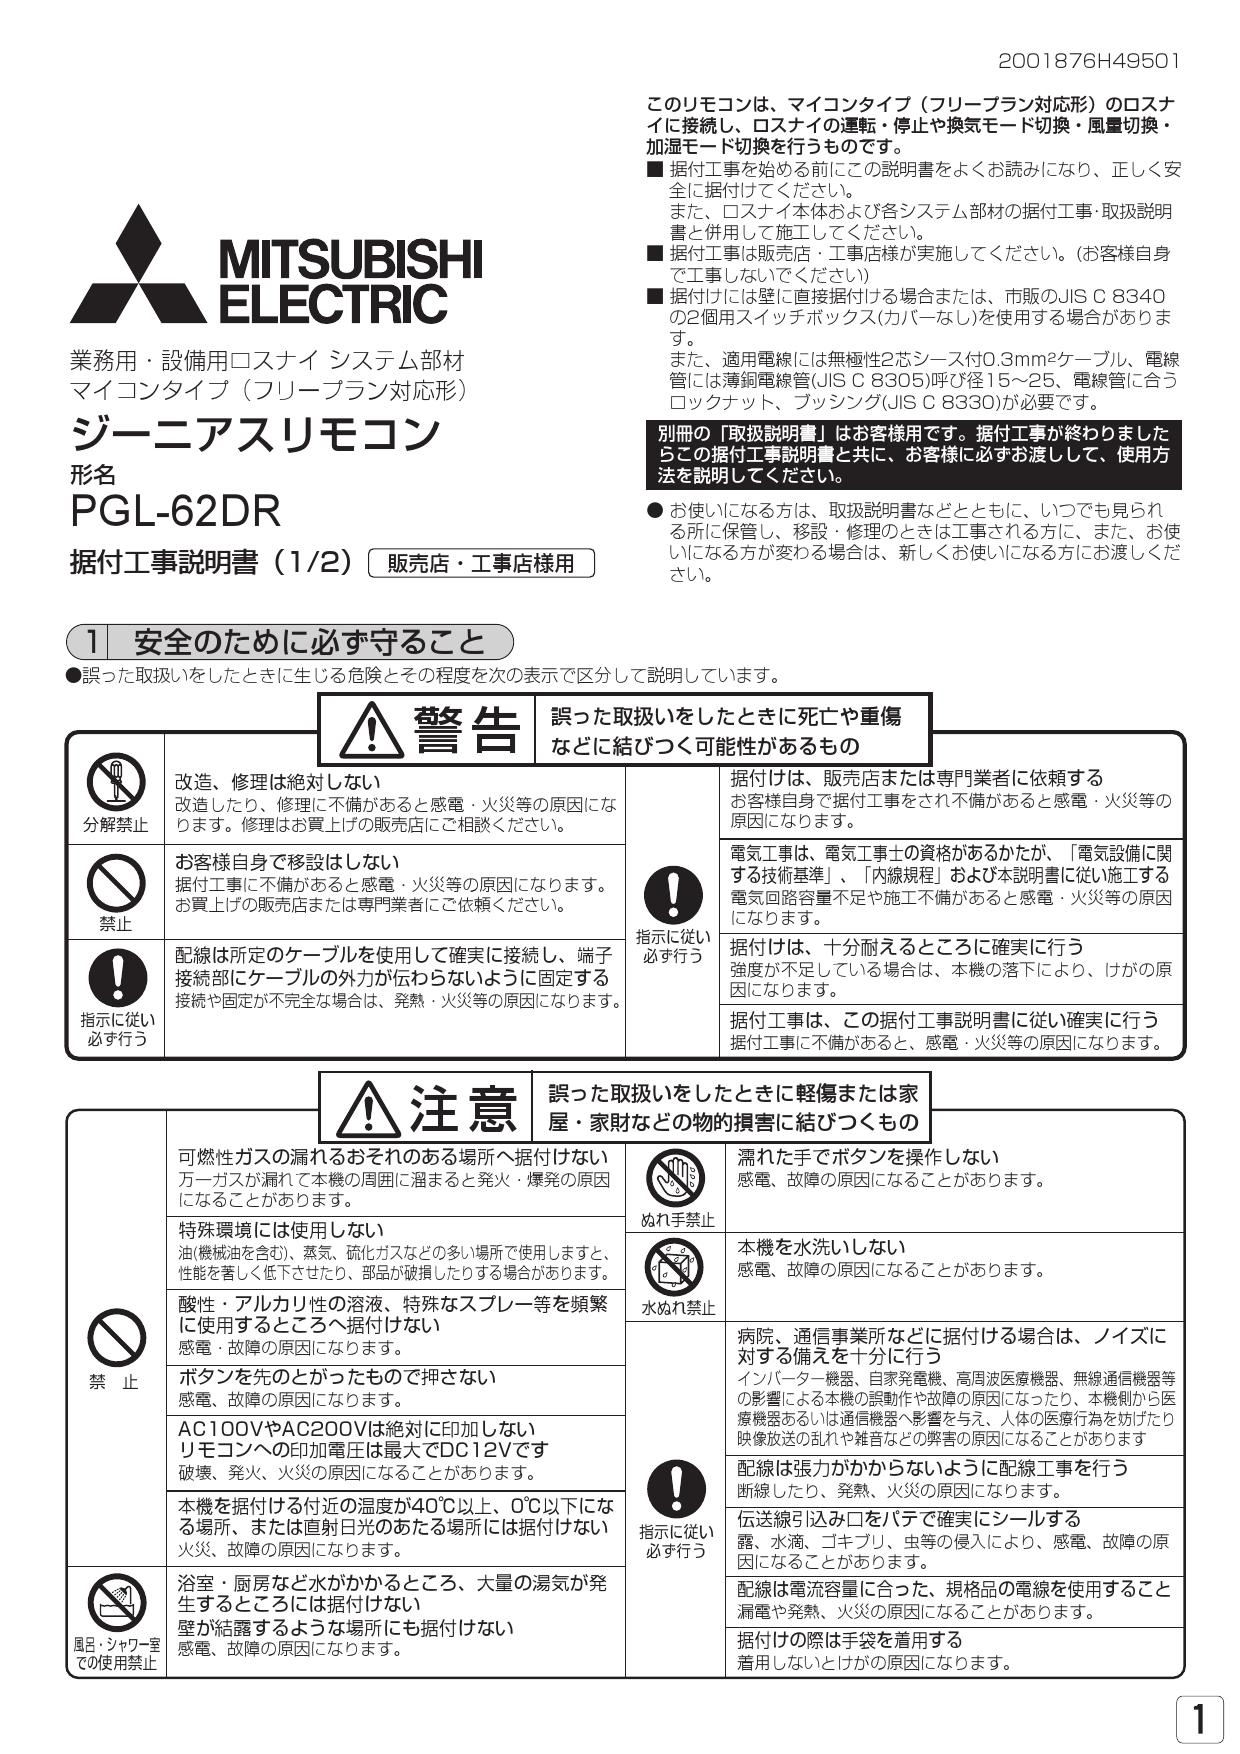 【国内在庫】 ジーニアスリモコン PGL-62DR 三菱電機 事務/店舗用品